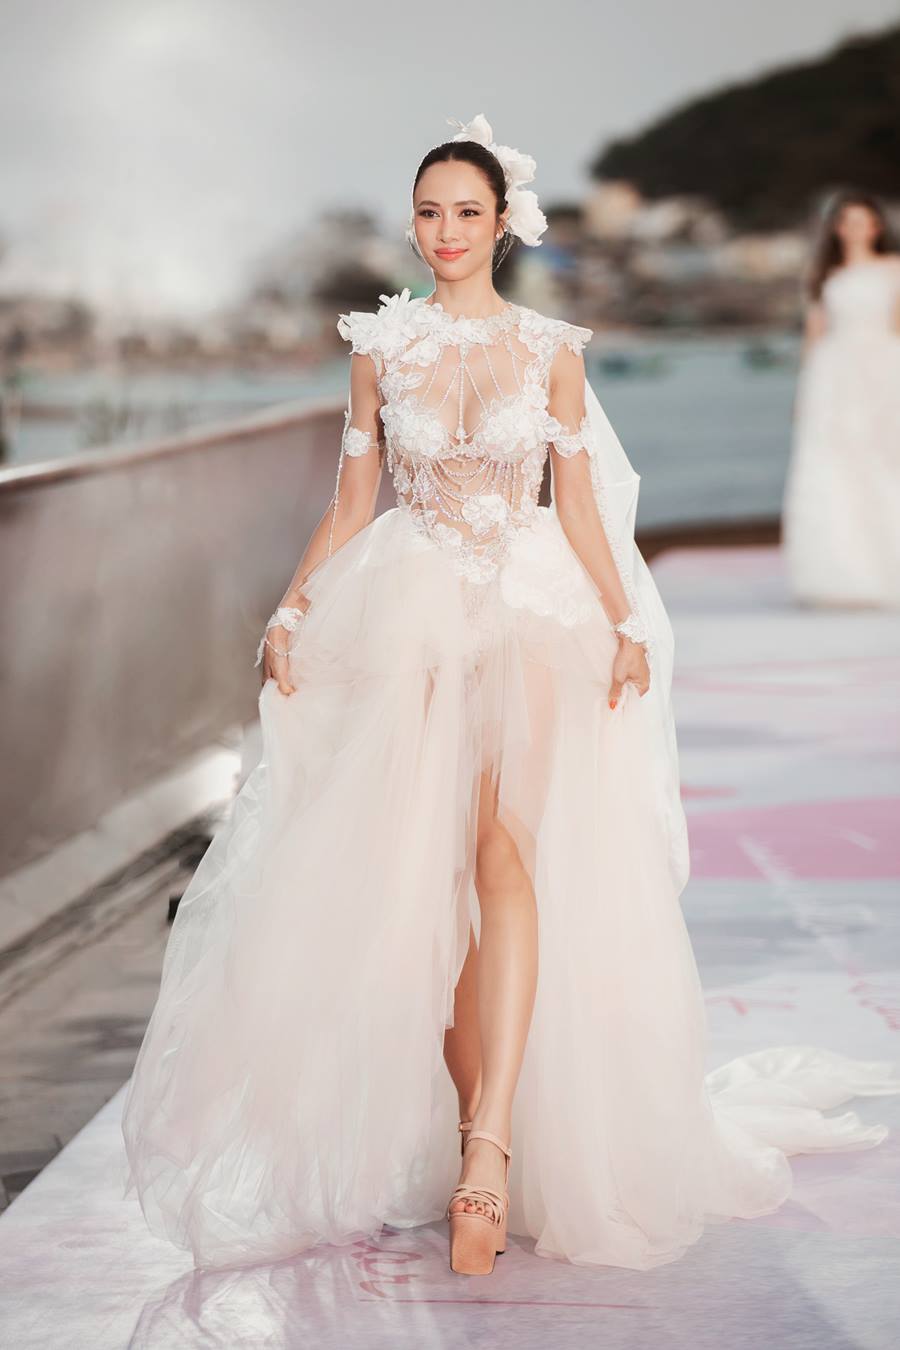 Vũ Ngọc Anh hóa thân thành cô dâu xinh đẹp với thiết kế váy cưới gợi cảm.